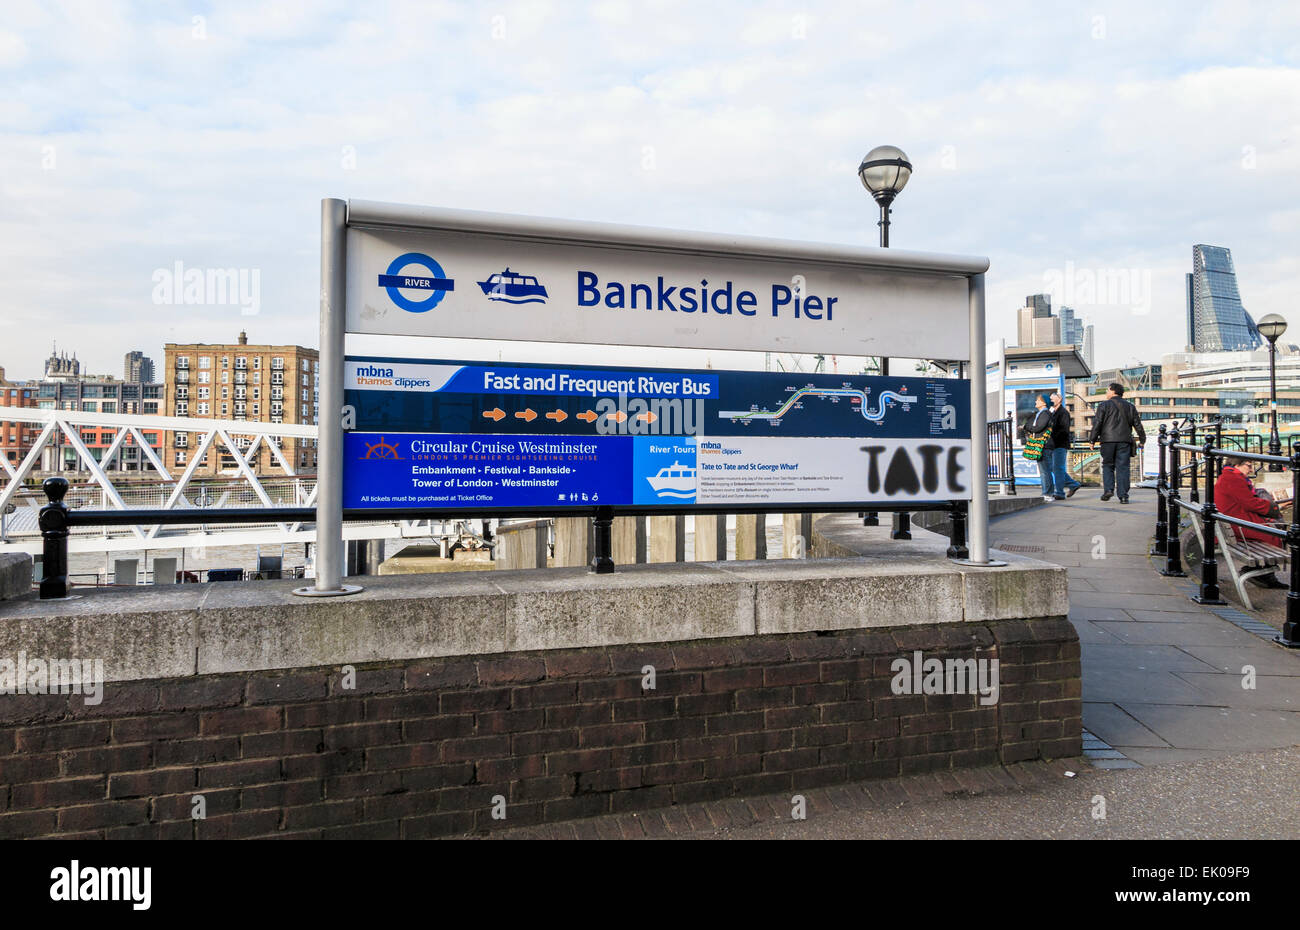 Panneau à l'entrée de Bankside Pier river boat station de bus sur la Tamise, Southwark, London SE1 près de la Tate Modern art gallery Banque D'Images